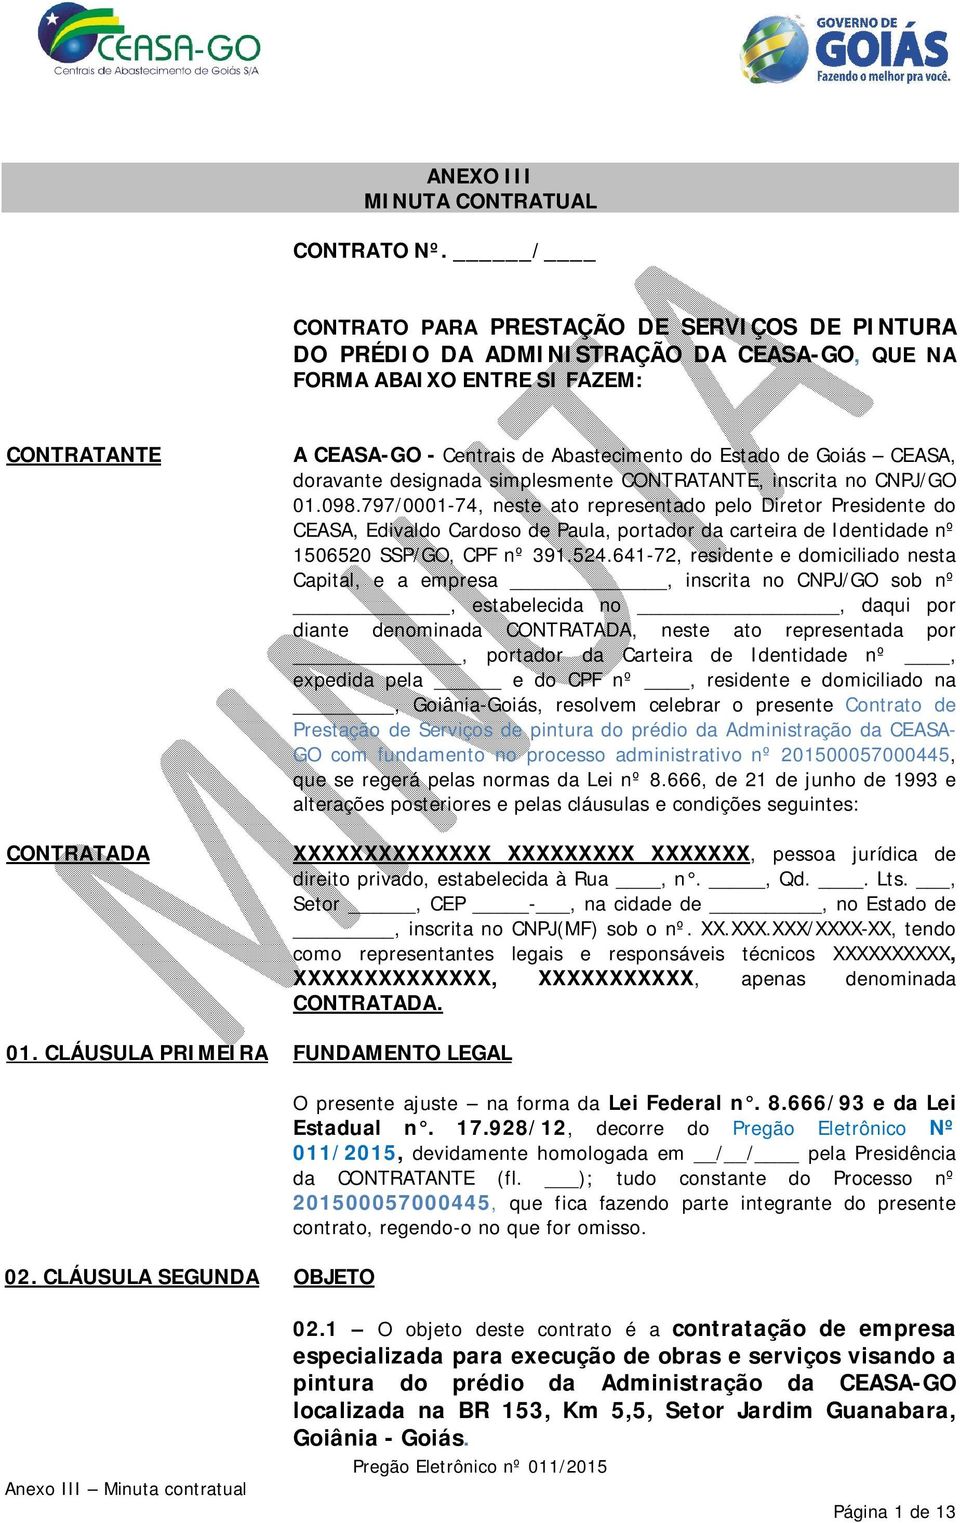 Goiás CEASA, doravante designada simplesmente CONTRATANTE, inscrita no CNPJ/GO 01.098.